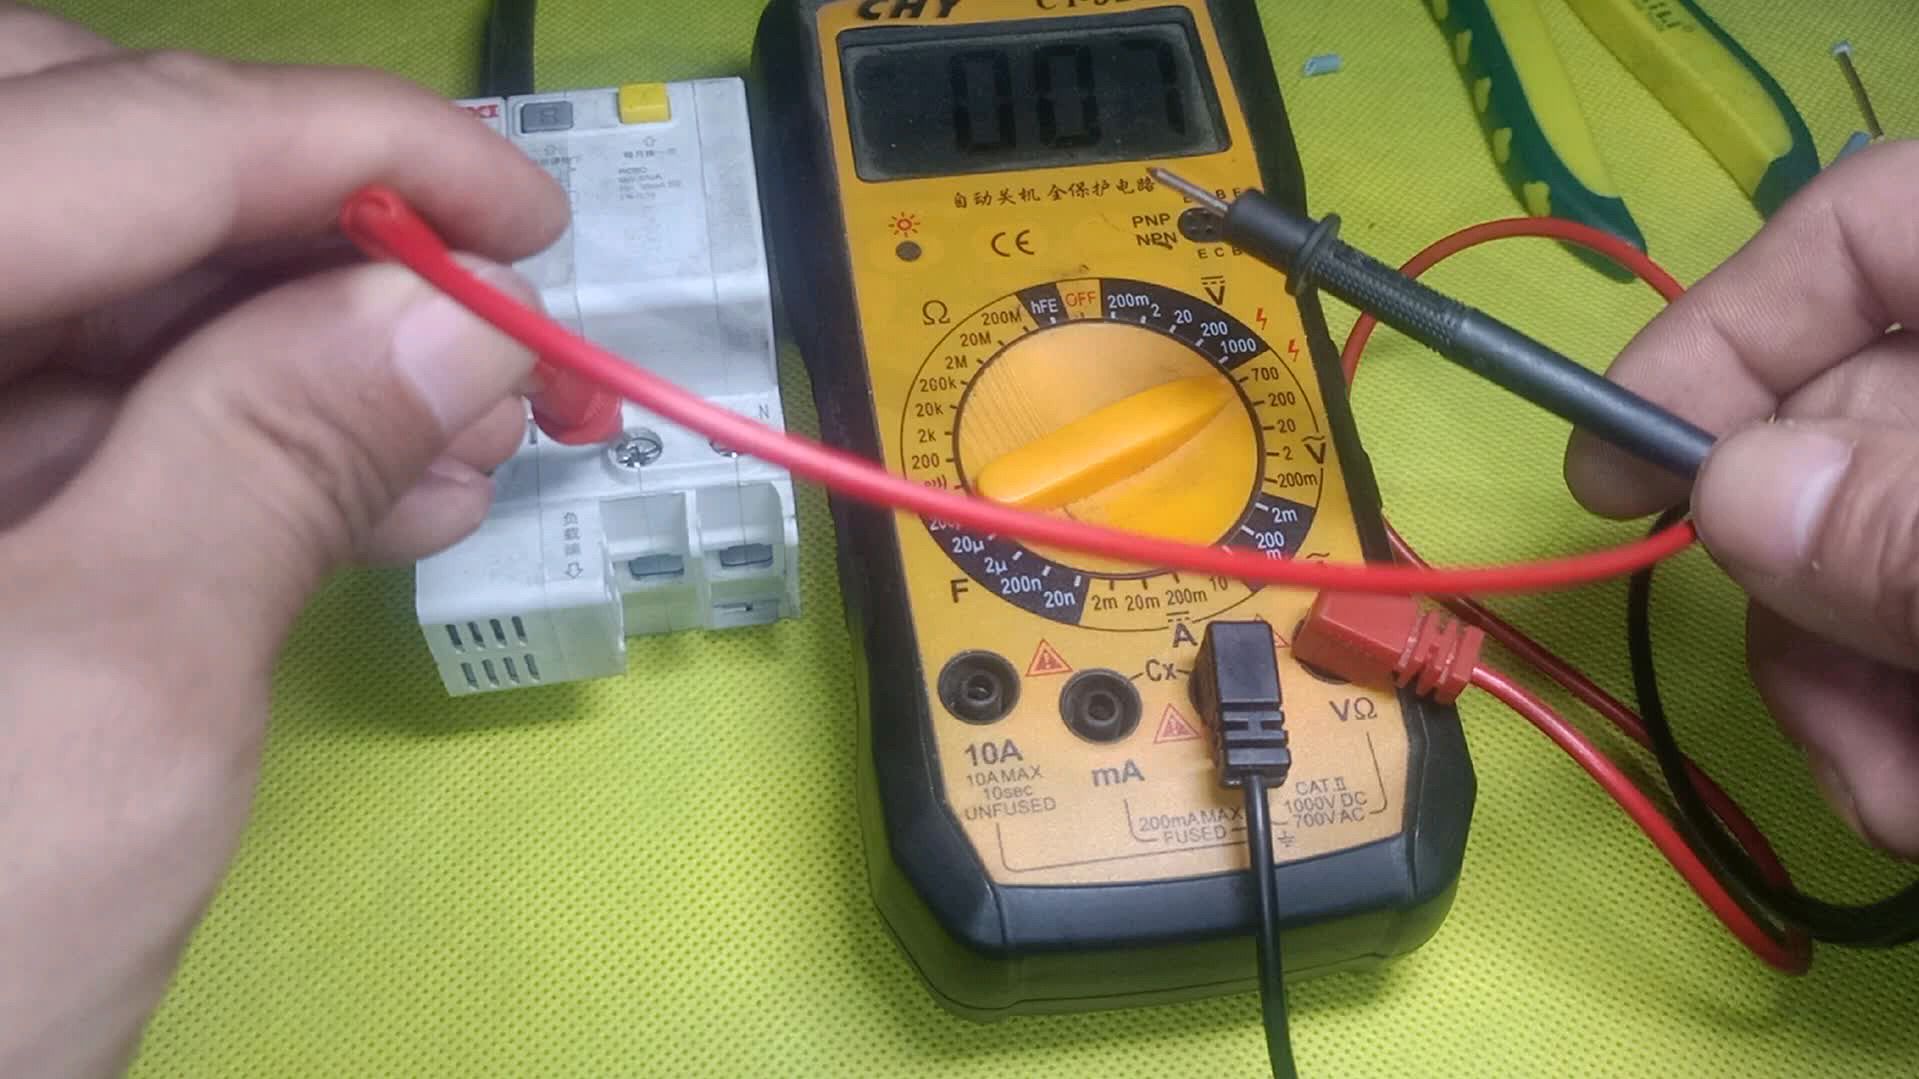 电工扫盲篇:万用表怎么测量交流电压?怎么区分火线零线?教给你